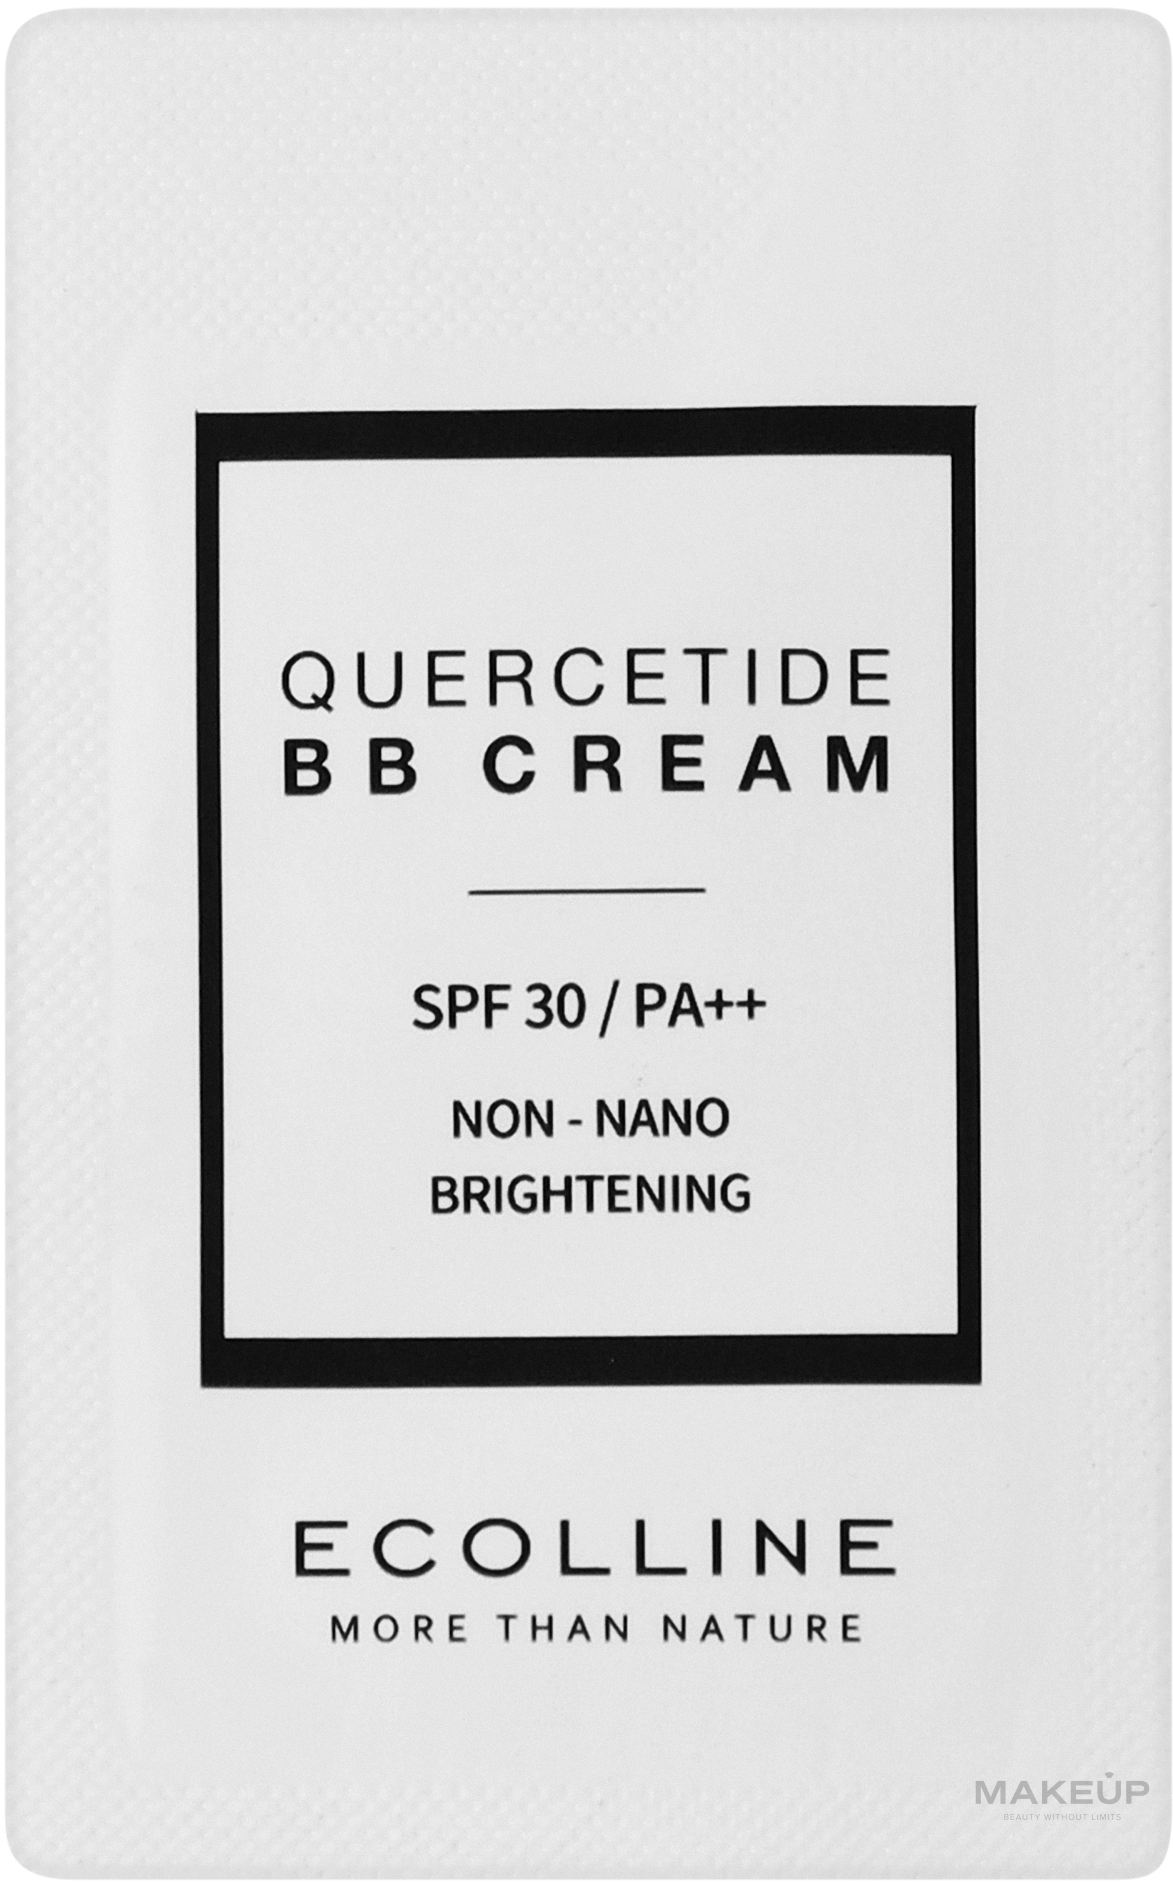 Тональний зволожувальний BB-крем з SPF 30/PA++ - Ecolline Quercetide BB Cream SPF 30/PA++ (пробник) — фото 1ml